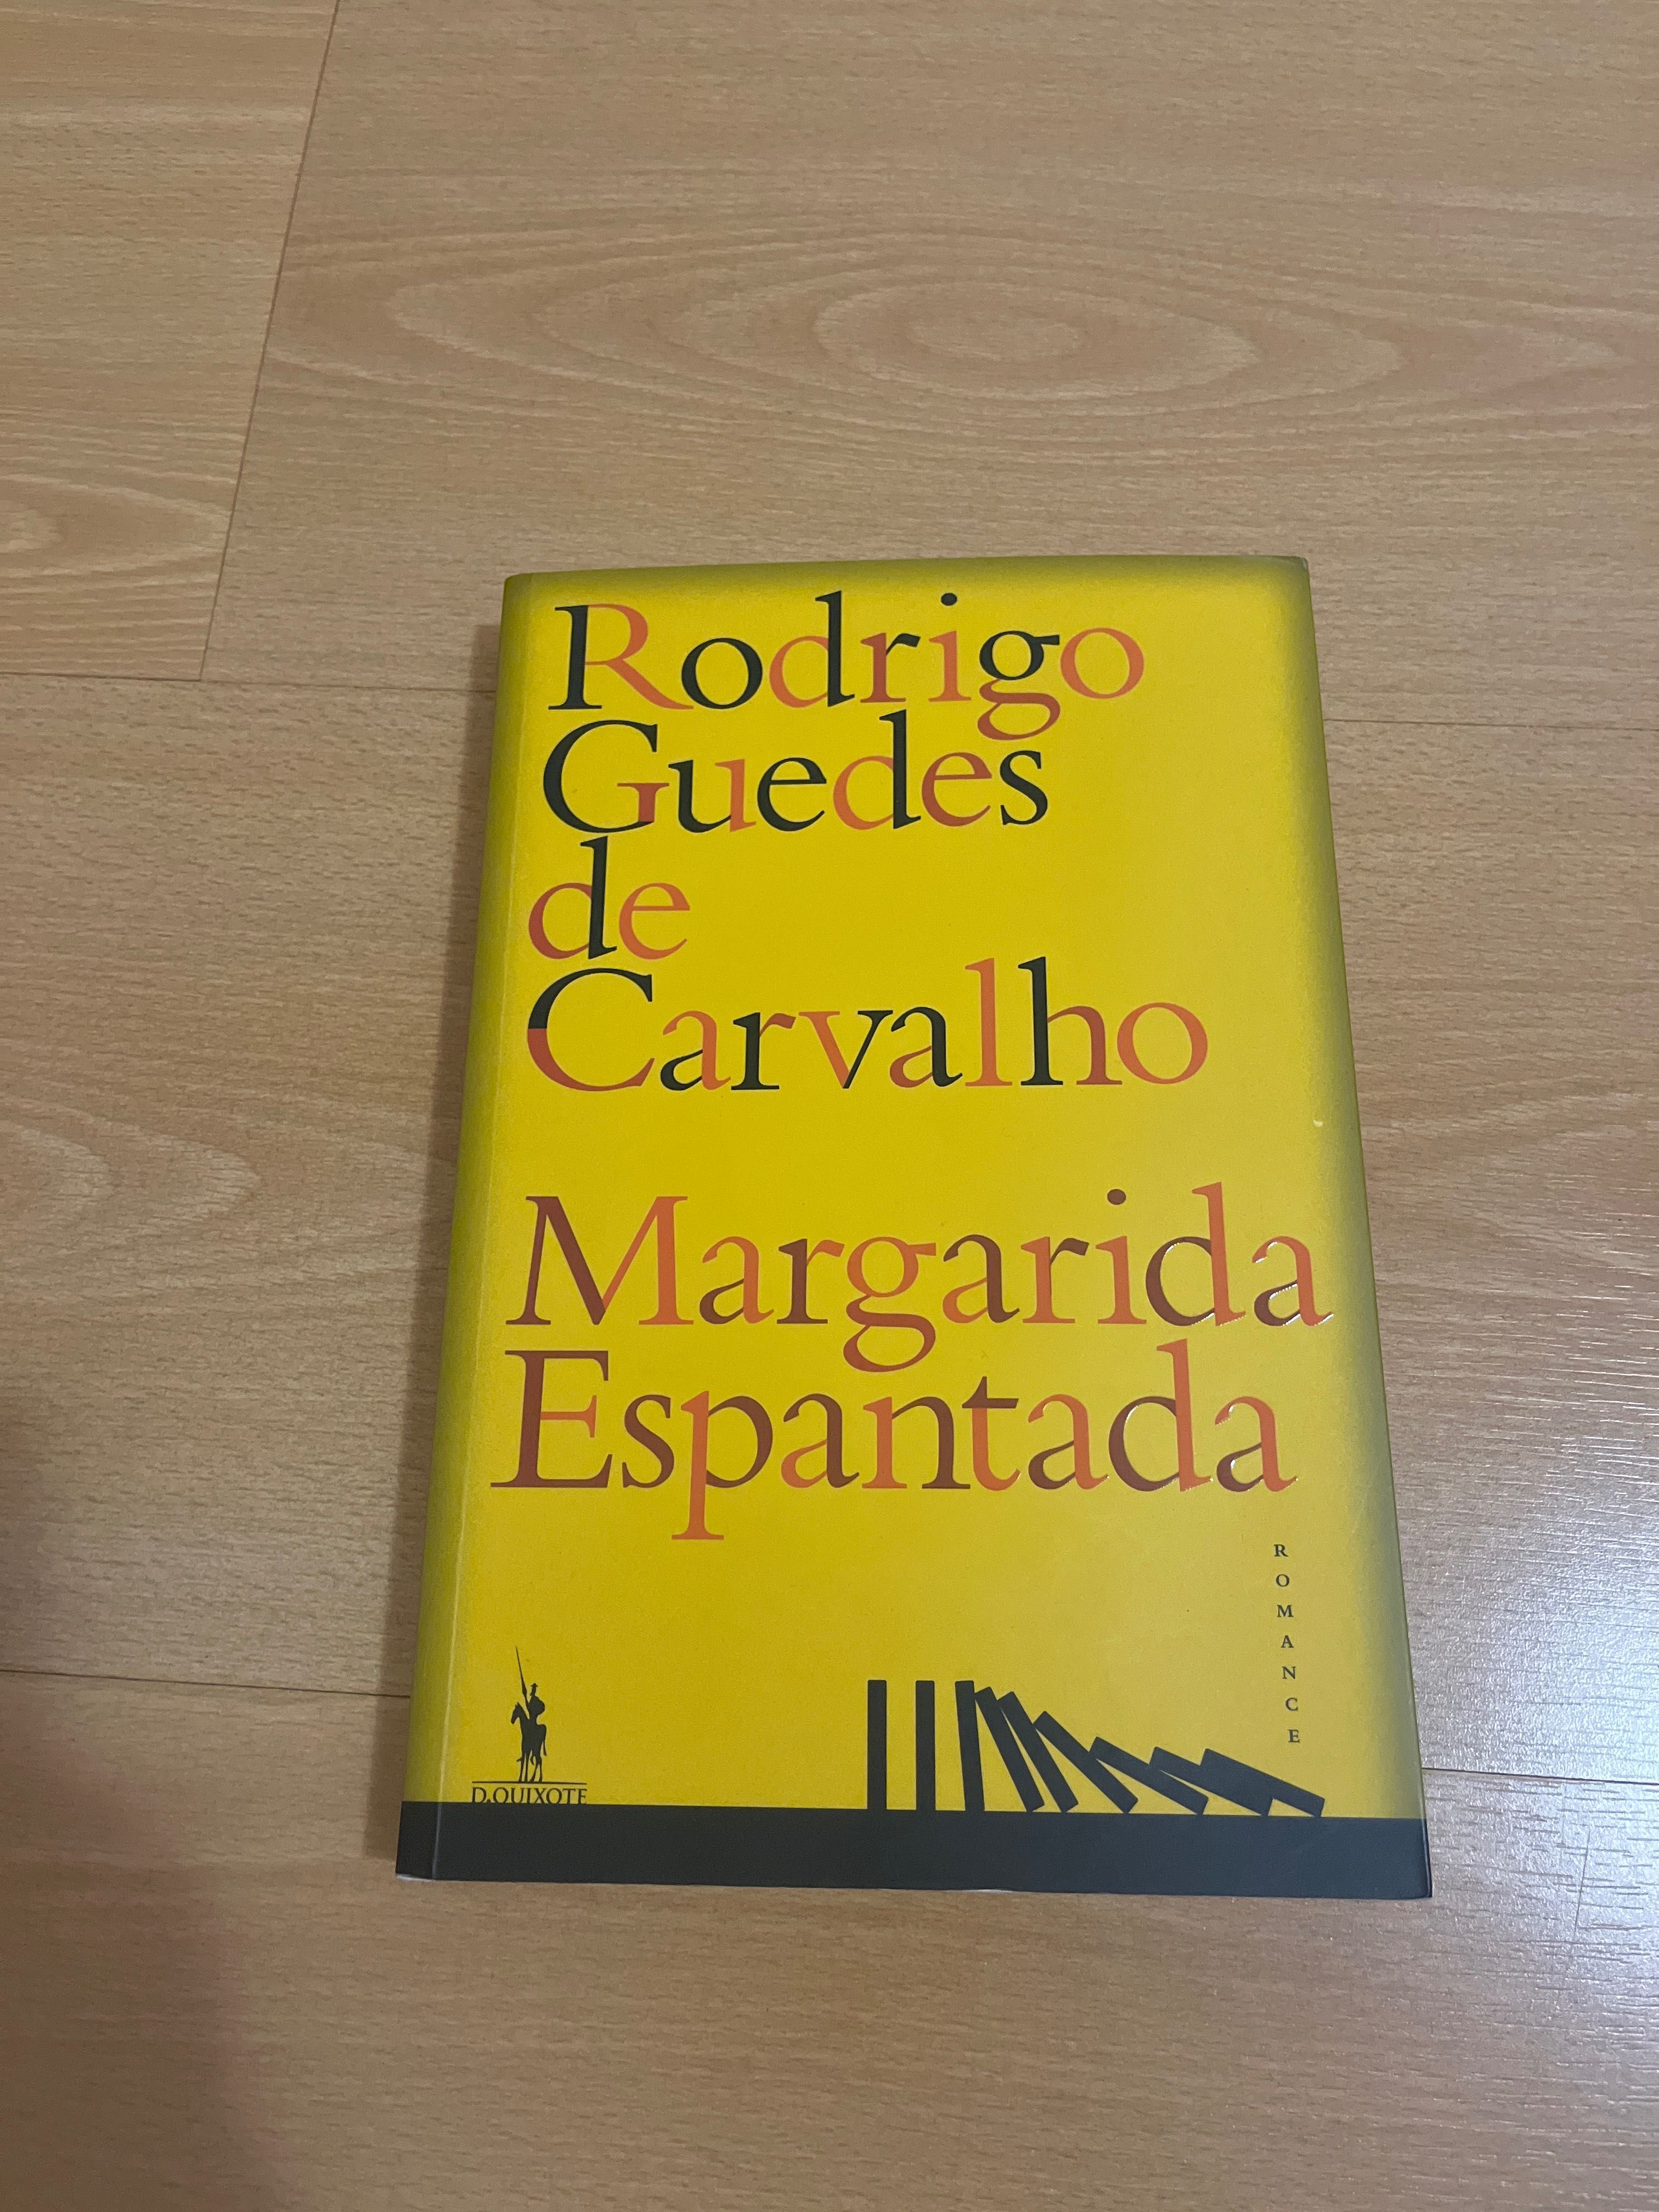 Margarida Espantada - José Guedes de Carvalho